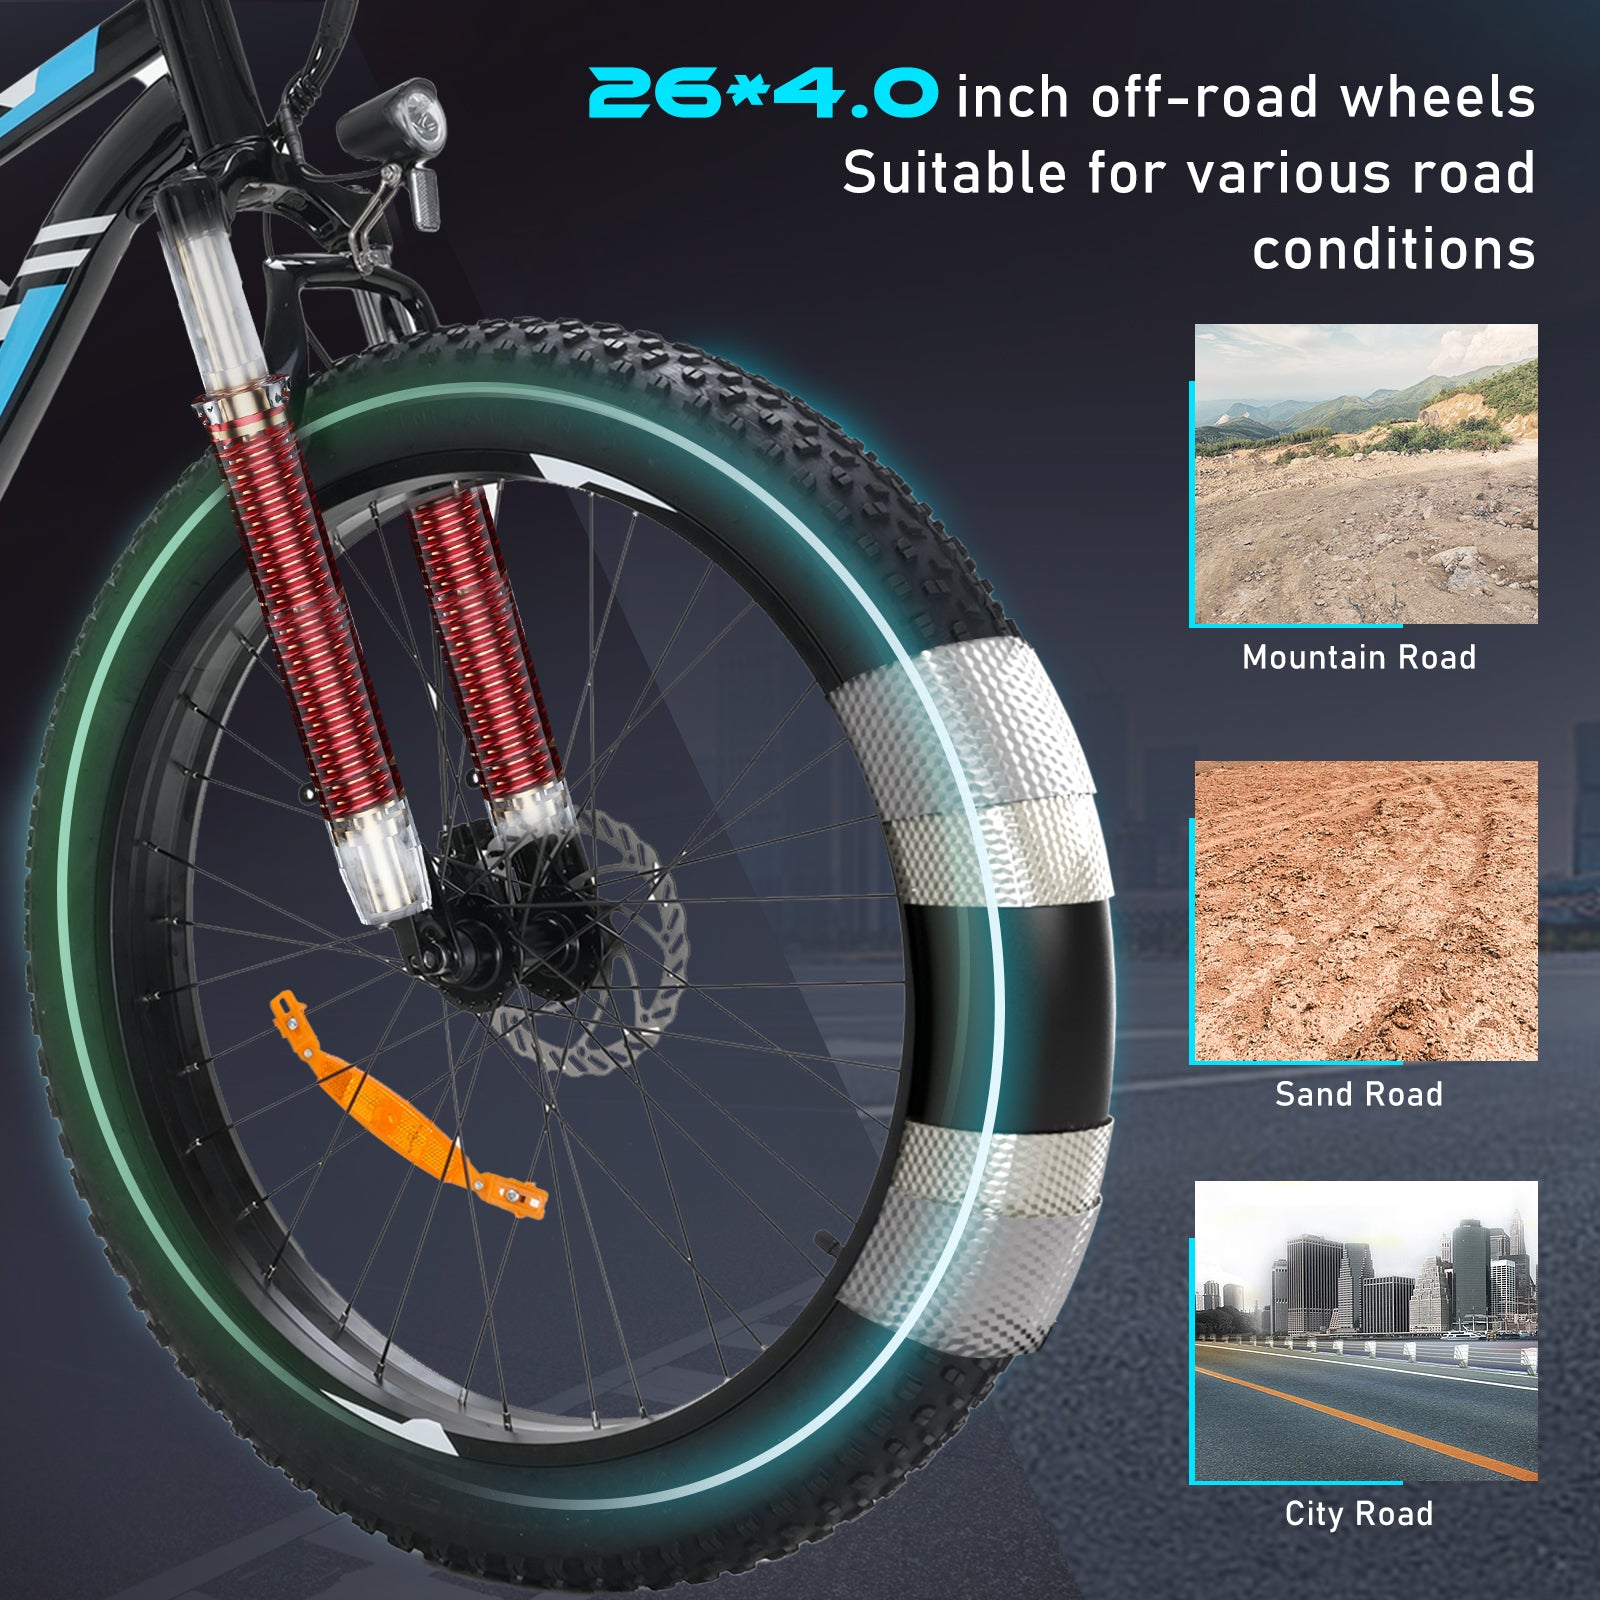 Bici elettrica per pneumatici grassi BK15 4.0